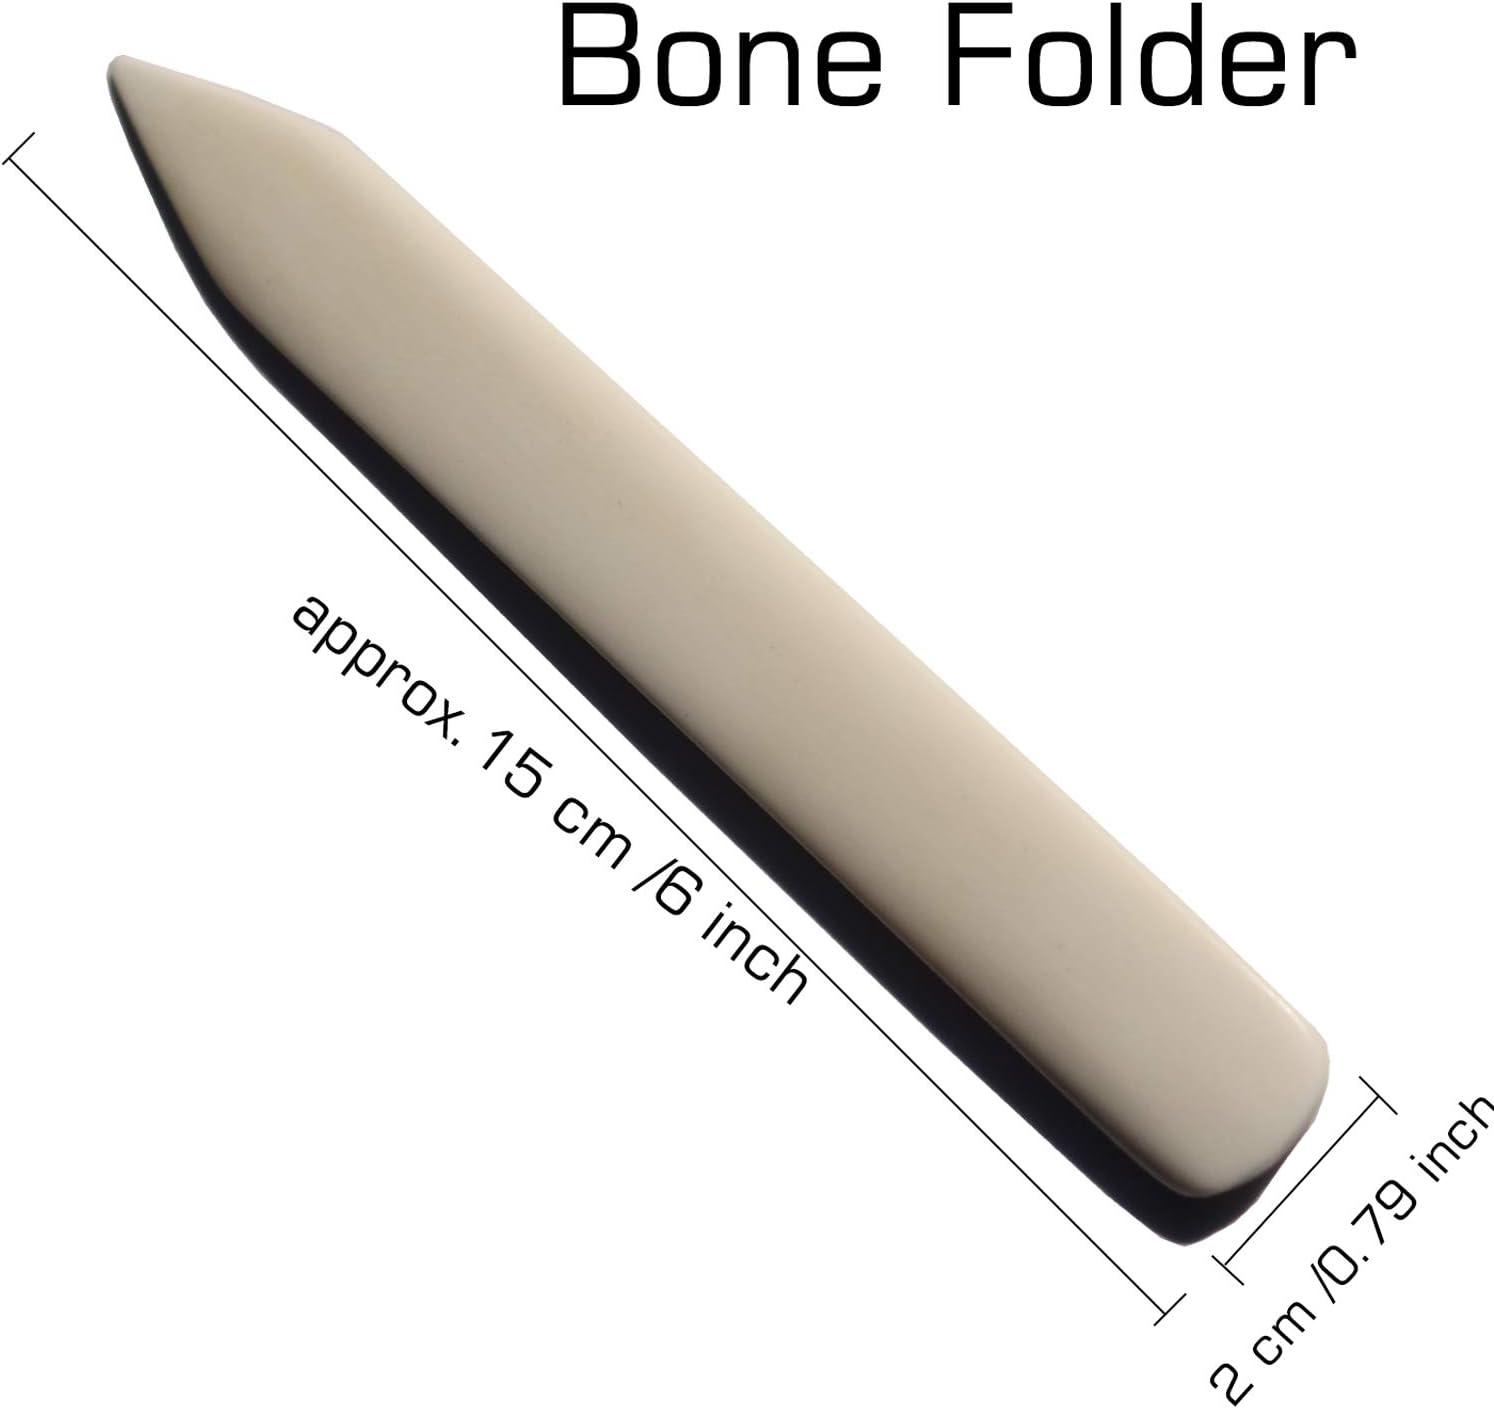 Bone Folder Curved Scoring Tool